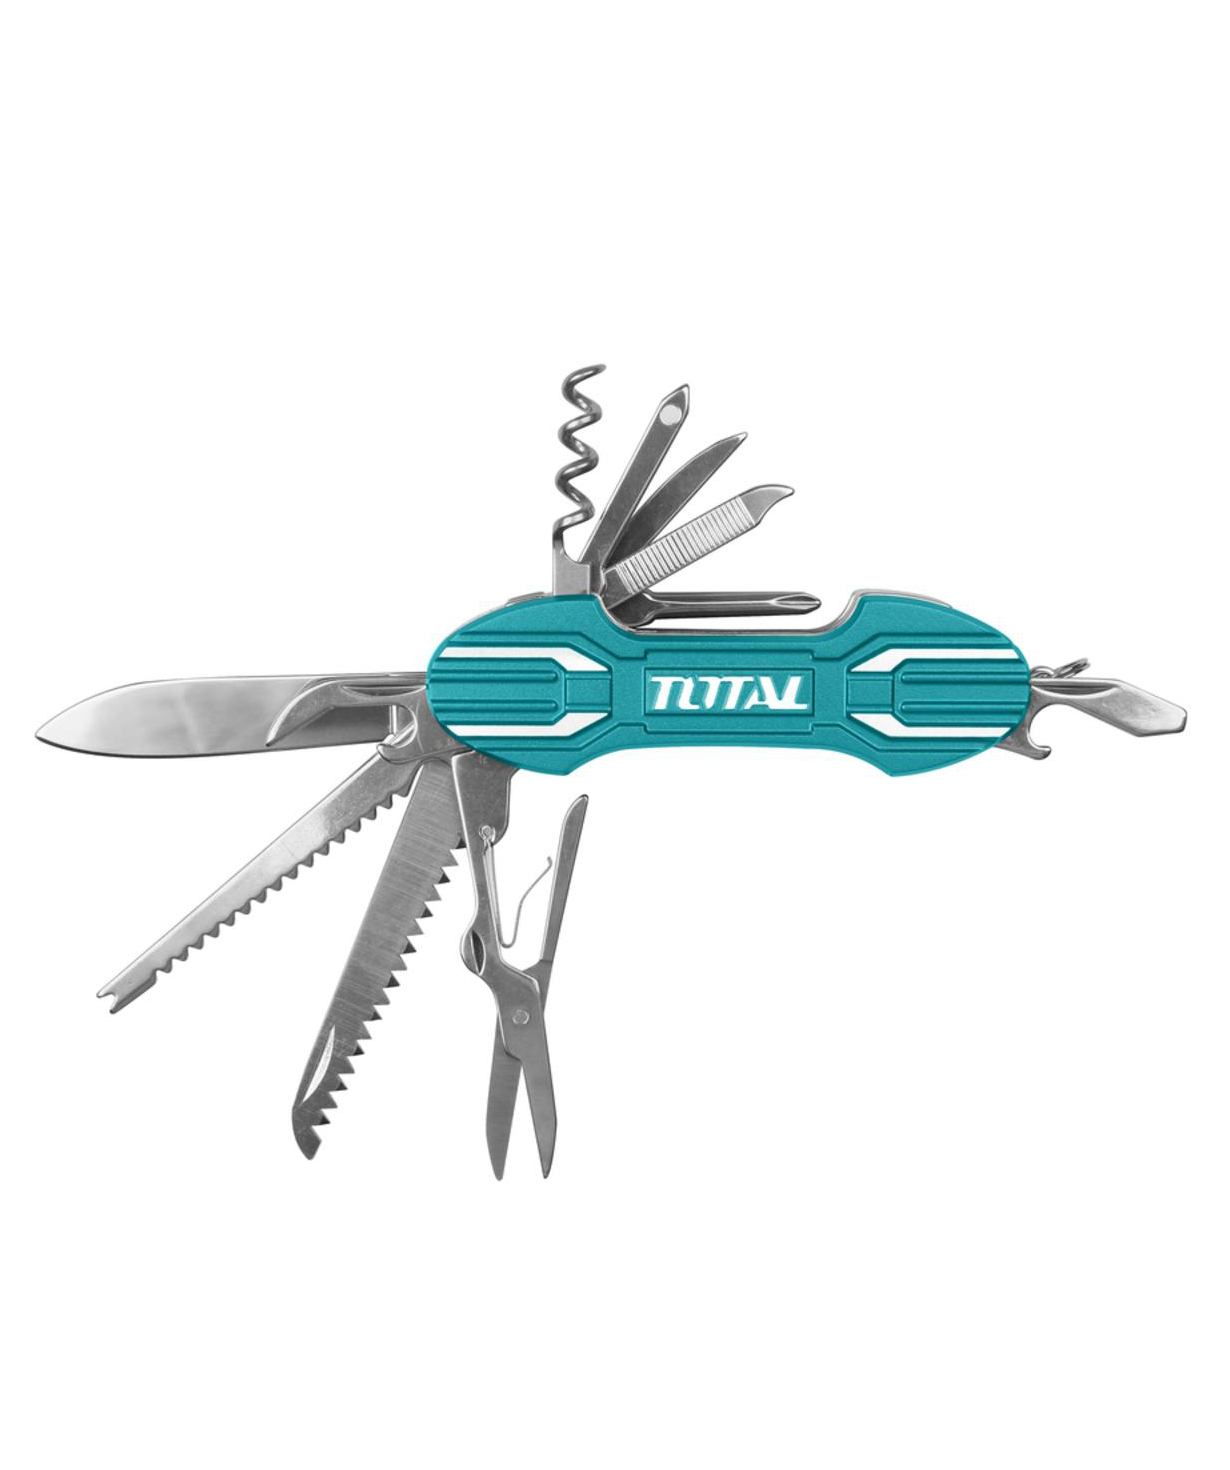 Коллекция `Total Tools` инструментов №11